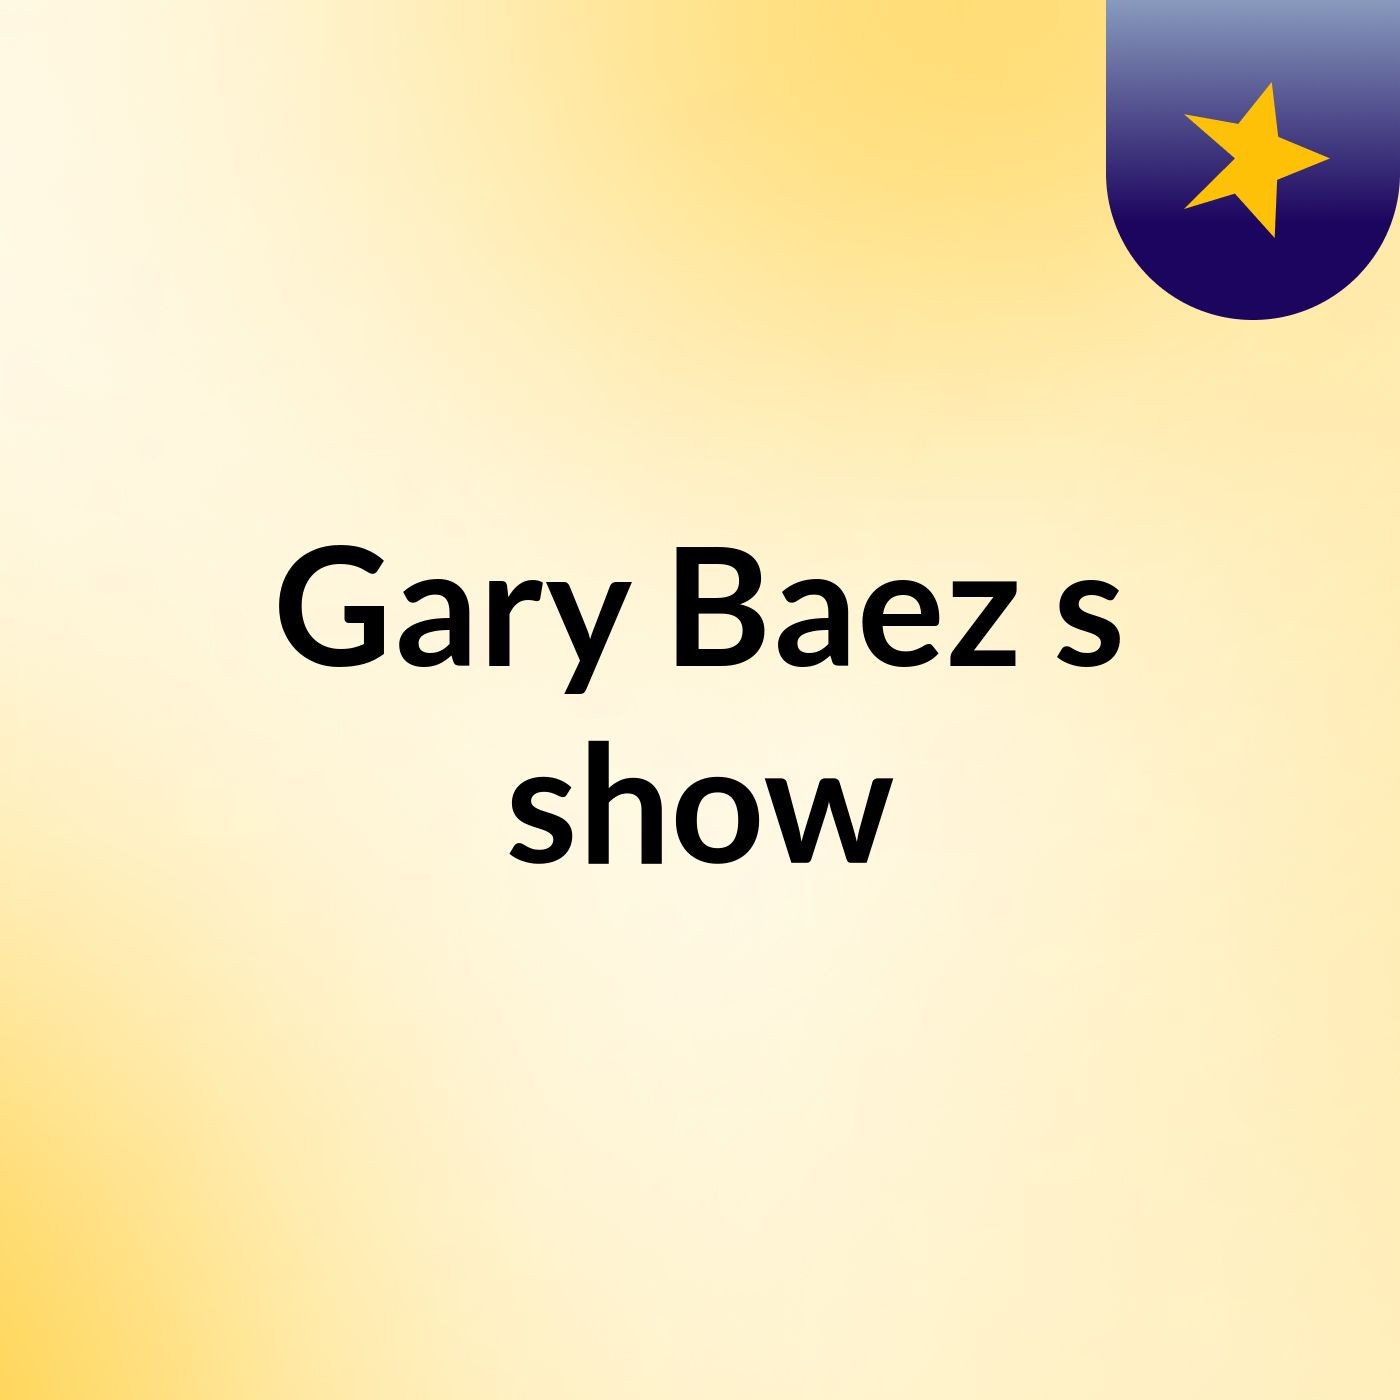 Gary Baez's show